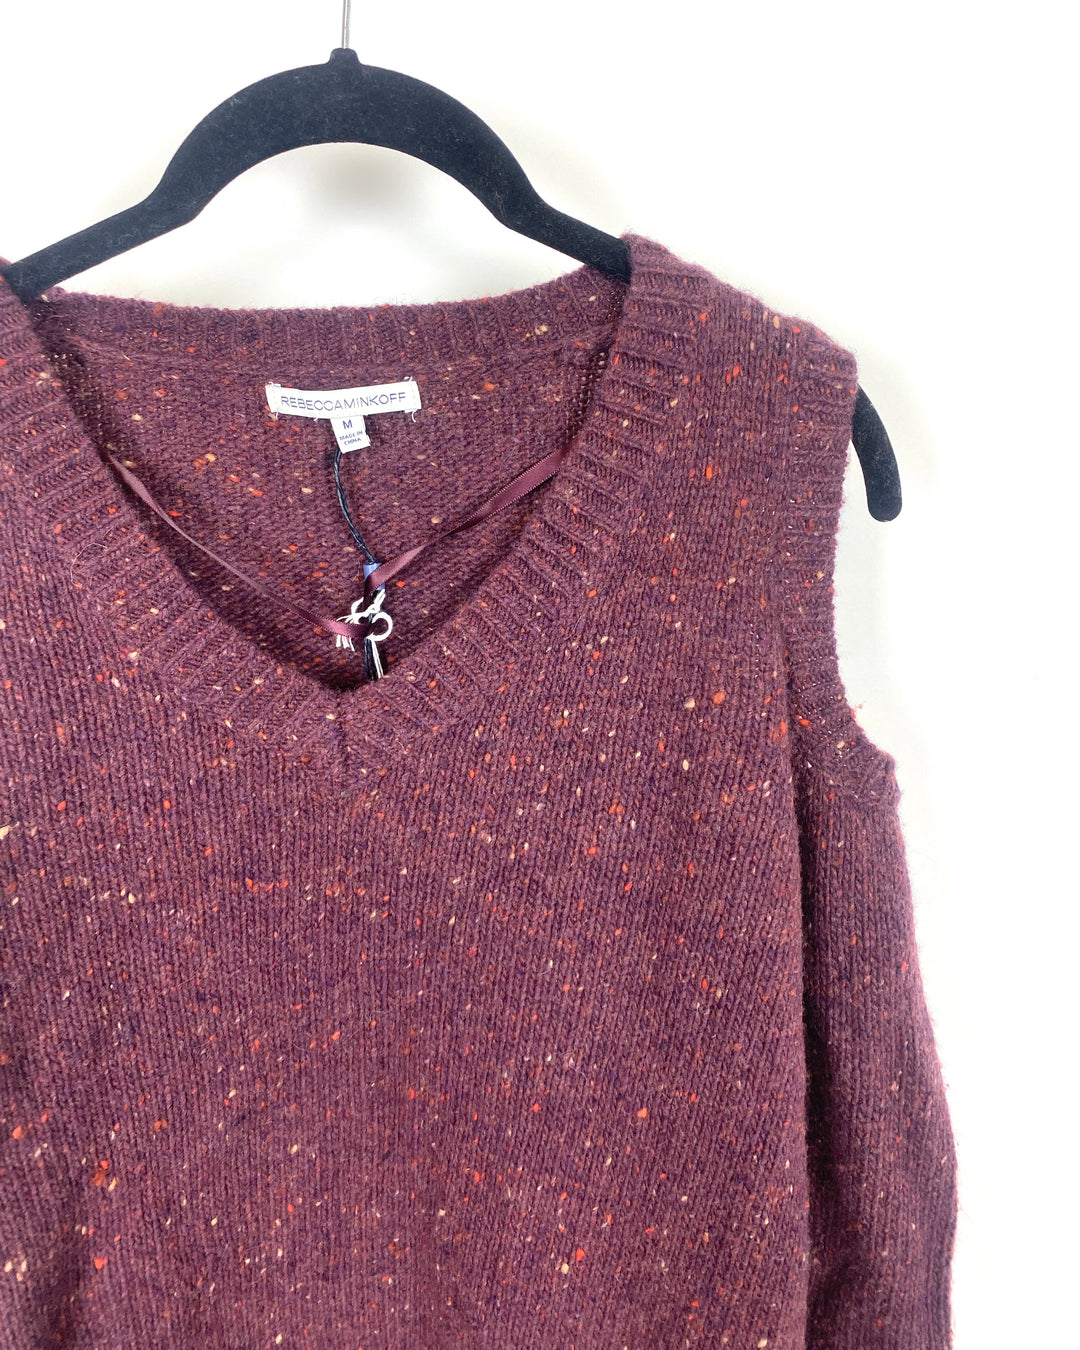 Purple Cold Shoulder Sweater - XXS, XS, S, M